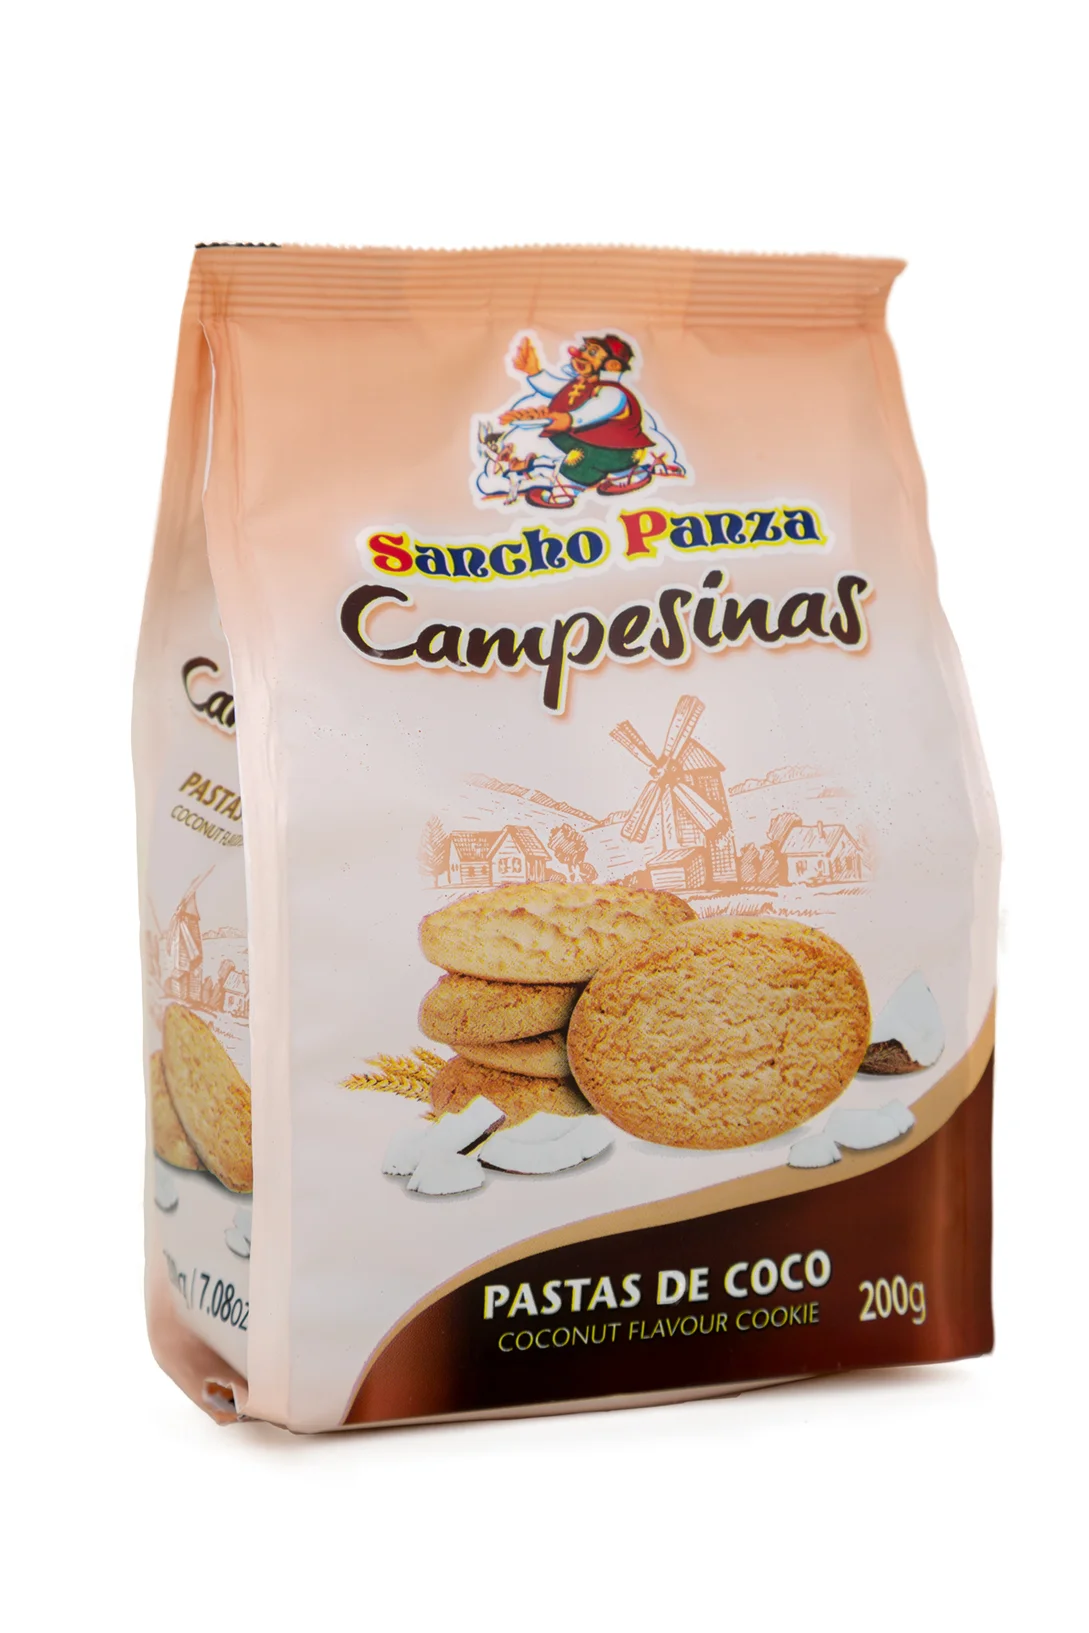 Galletas Angulo pastas de coco.webp